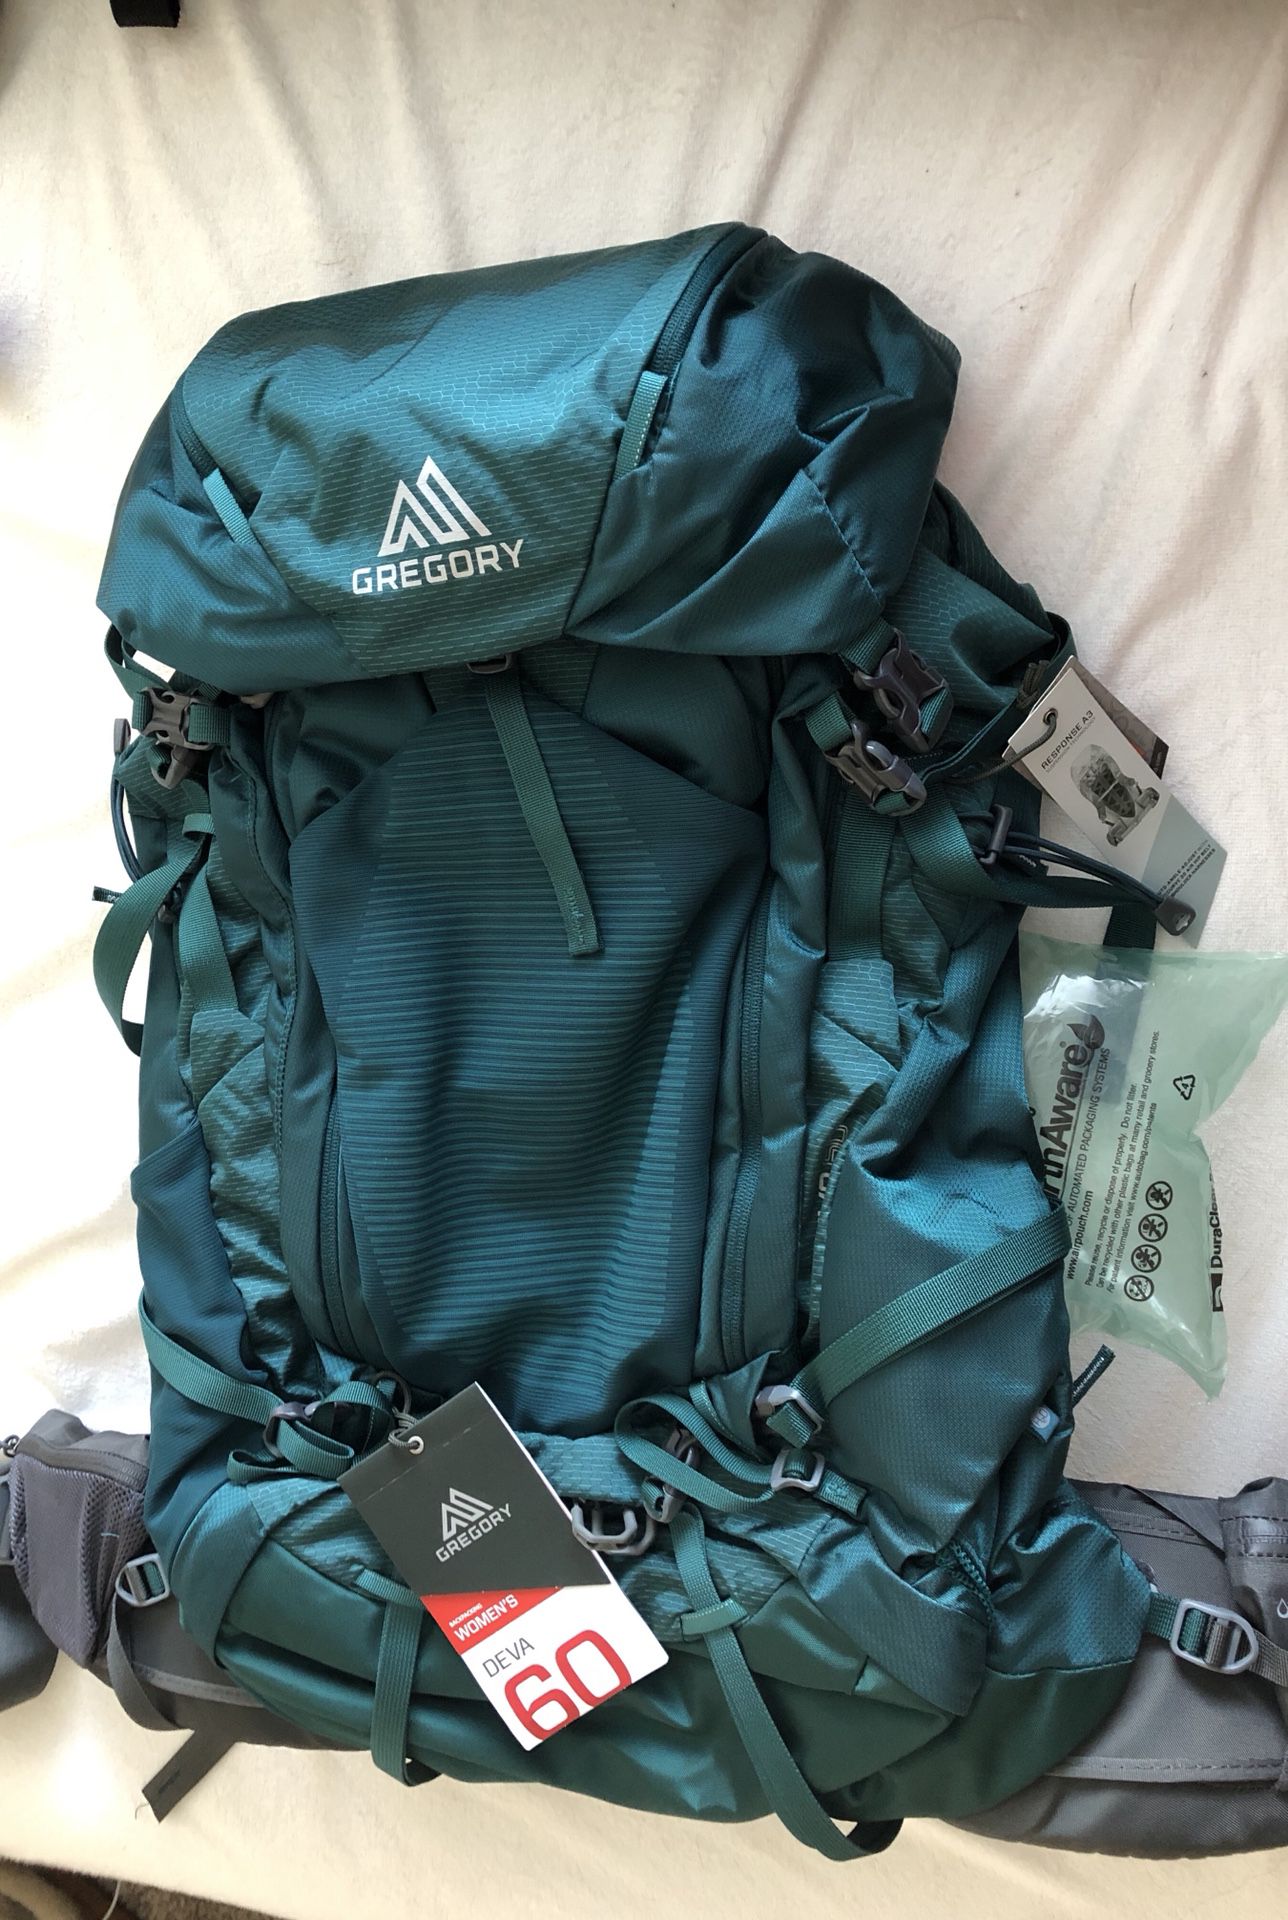 Gregory Deva 60 L backpacking pack